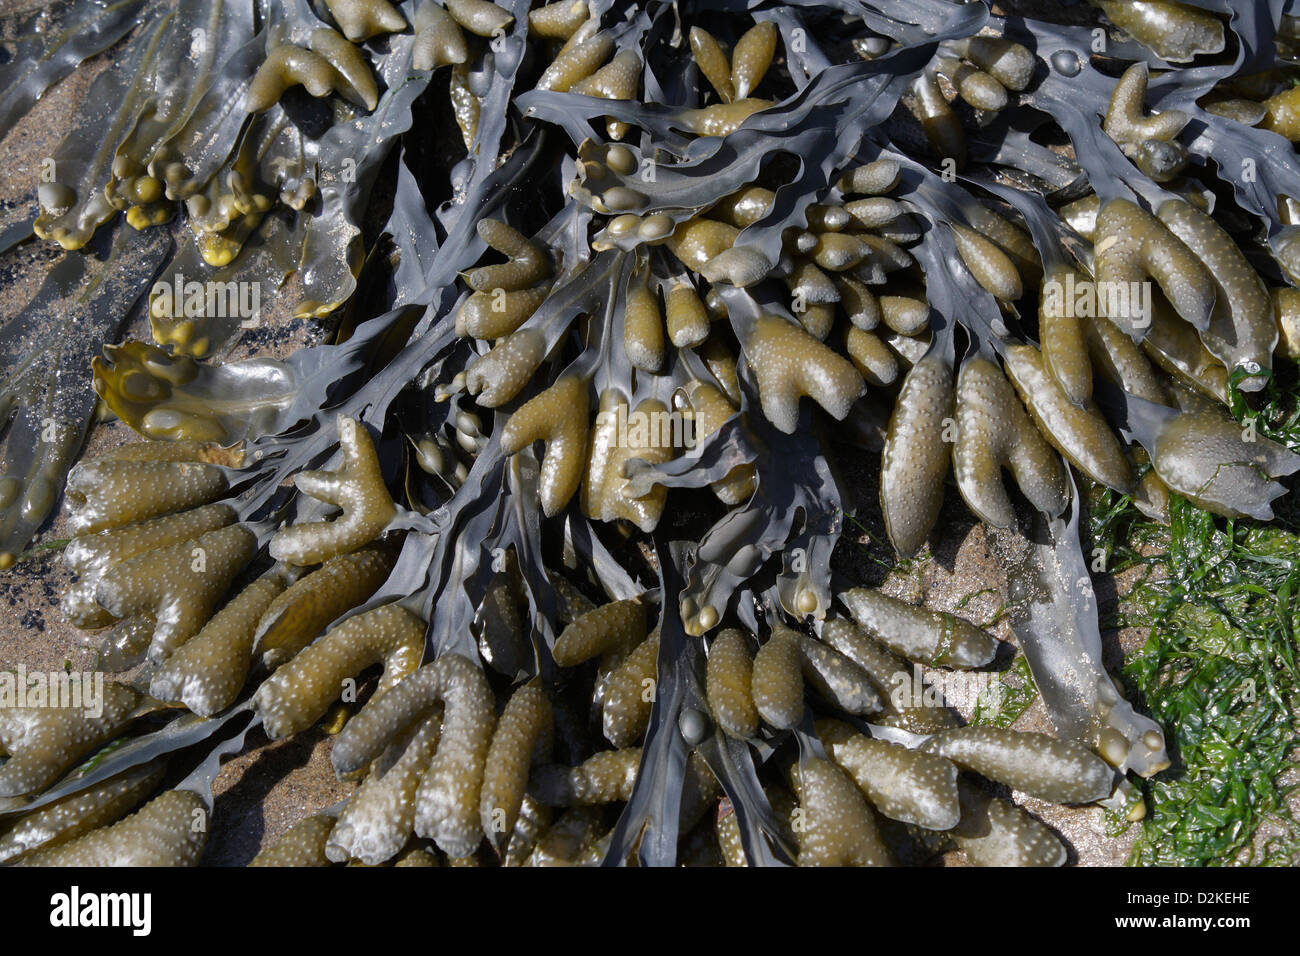 Bladderwrack Seaweed Fucus Vesiculosus on a beach, marine plant life Seashore coast shoreline British coastline Stock Photo